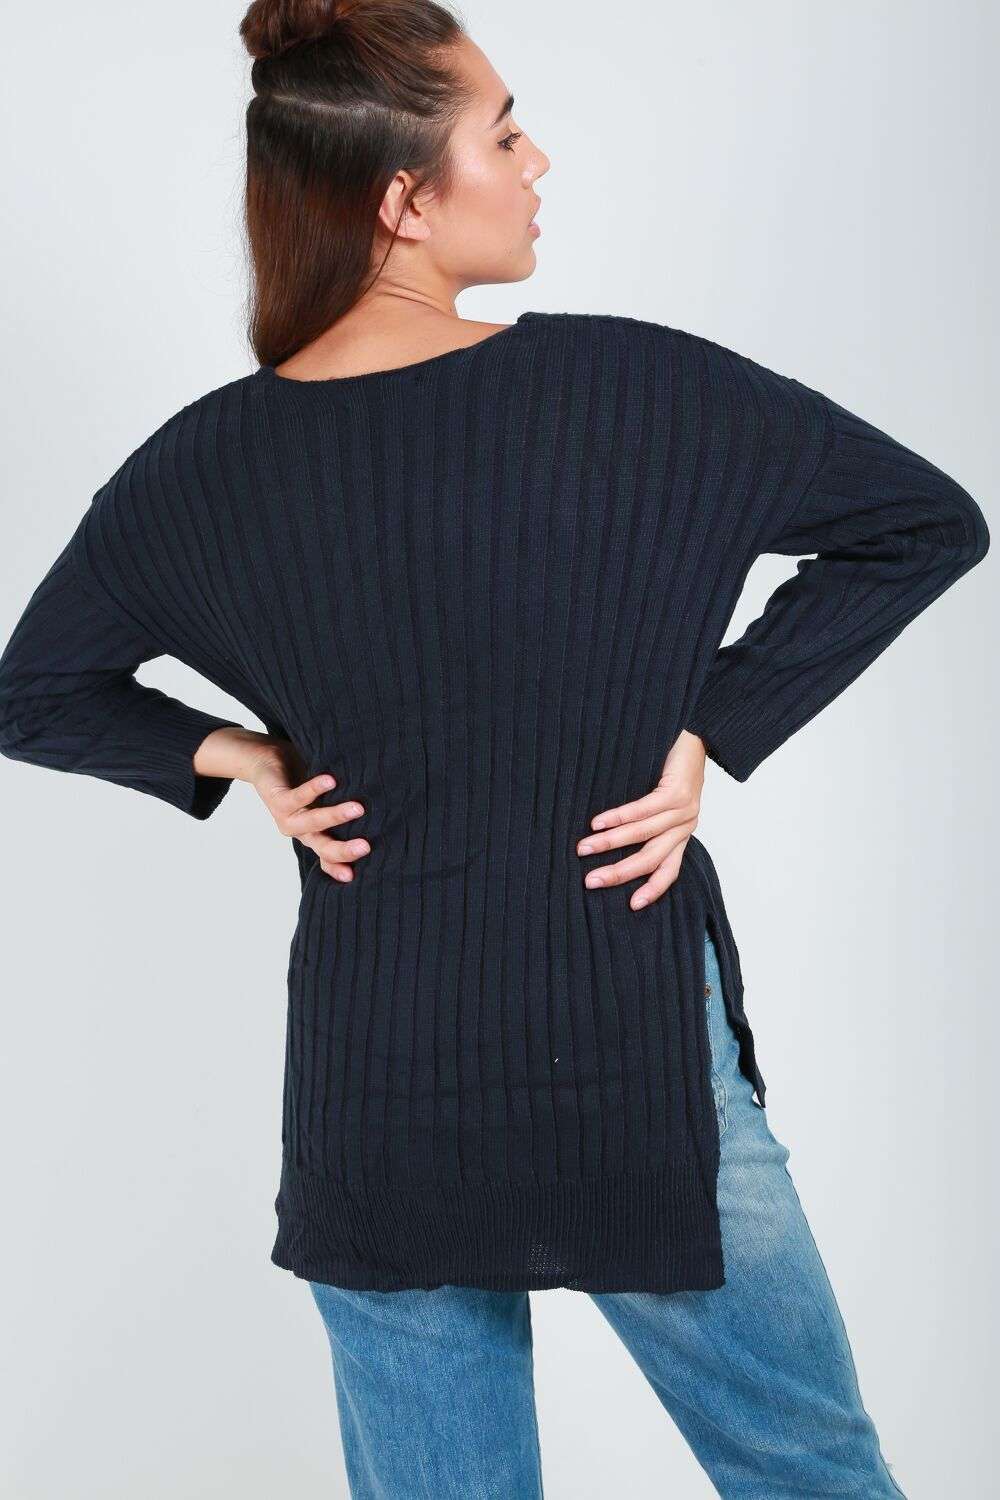 Amelie Long Sleeve V Neck Ribbed Knitted Jumper - bejealous-com